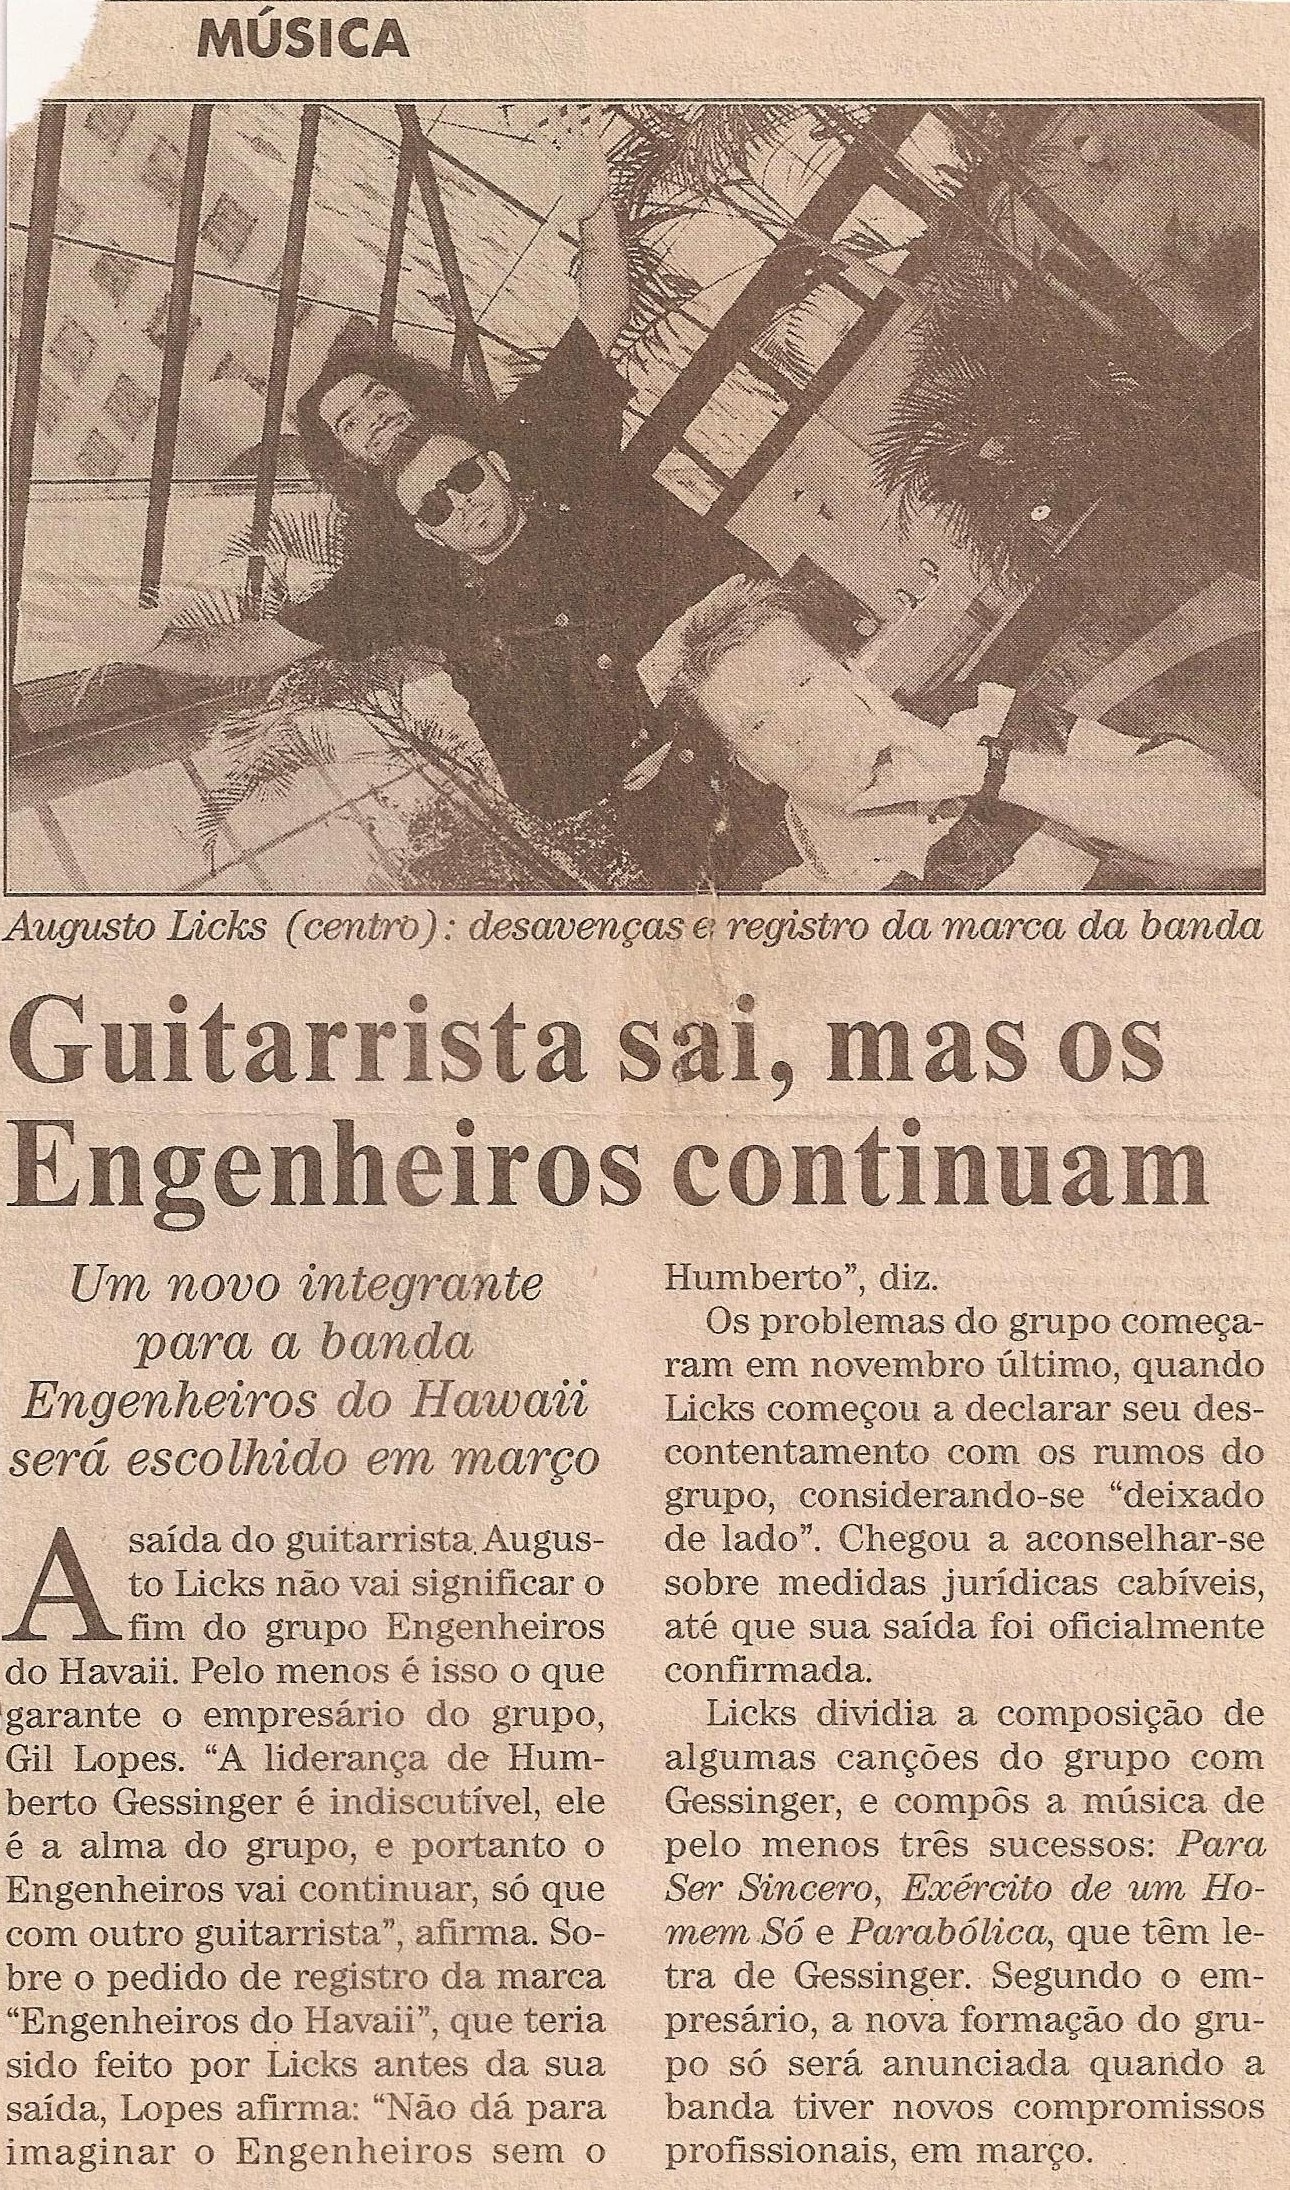 1994 - Guitarrista sai, mas os Engenheiros continuam